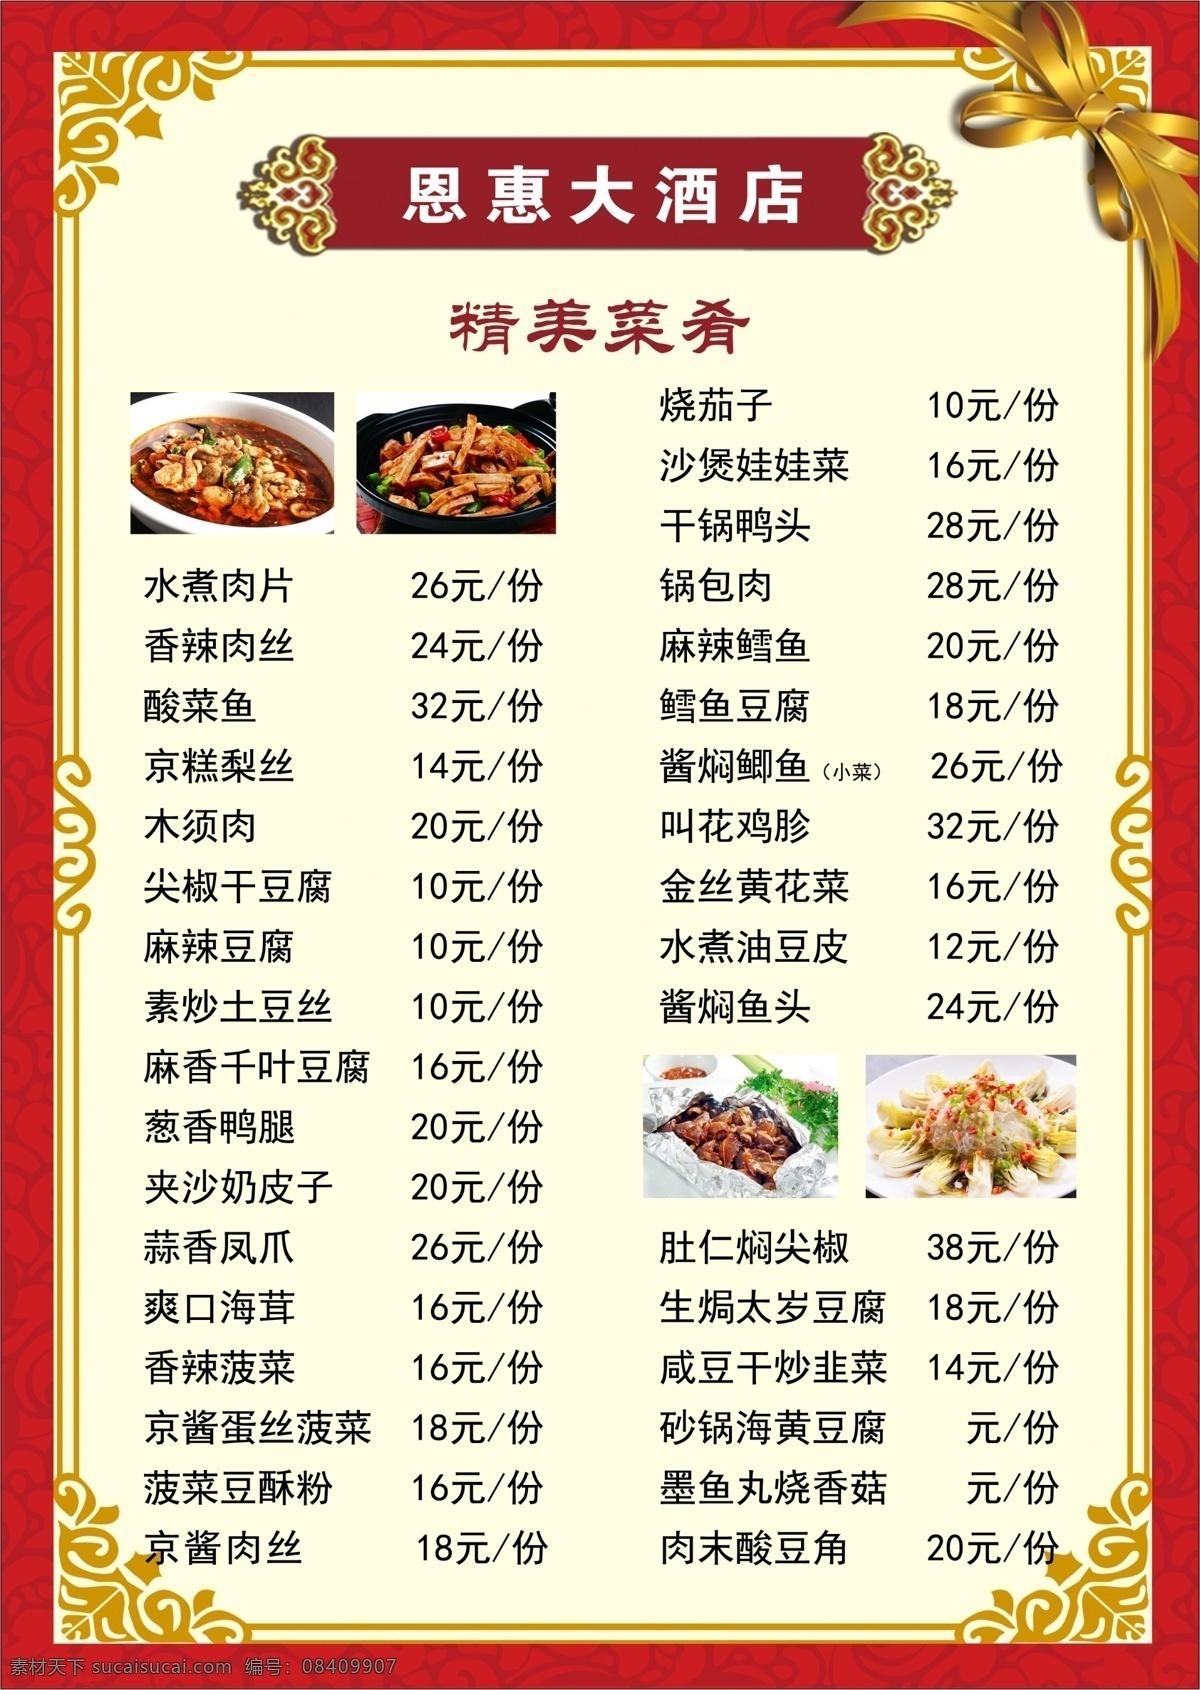 酒店 菜单 菜谱 单子 锅包肉 烧 焖 清炖 广告贴